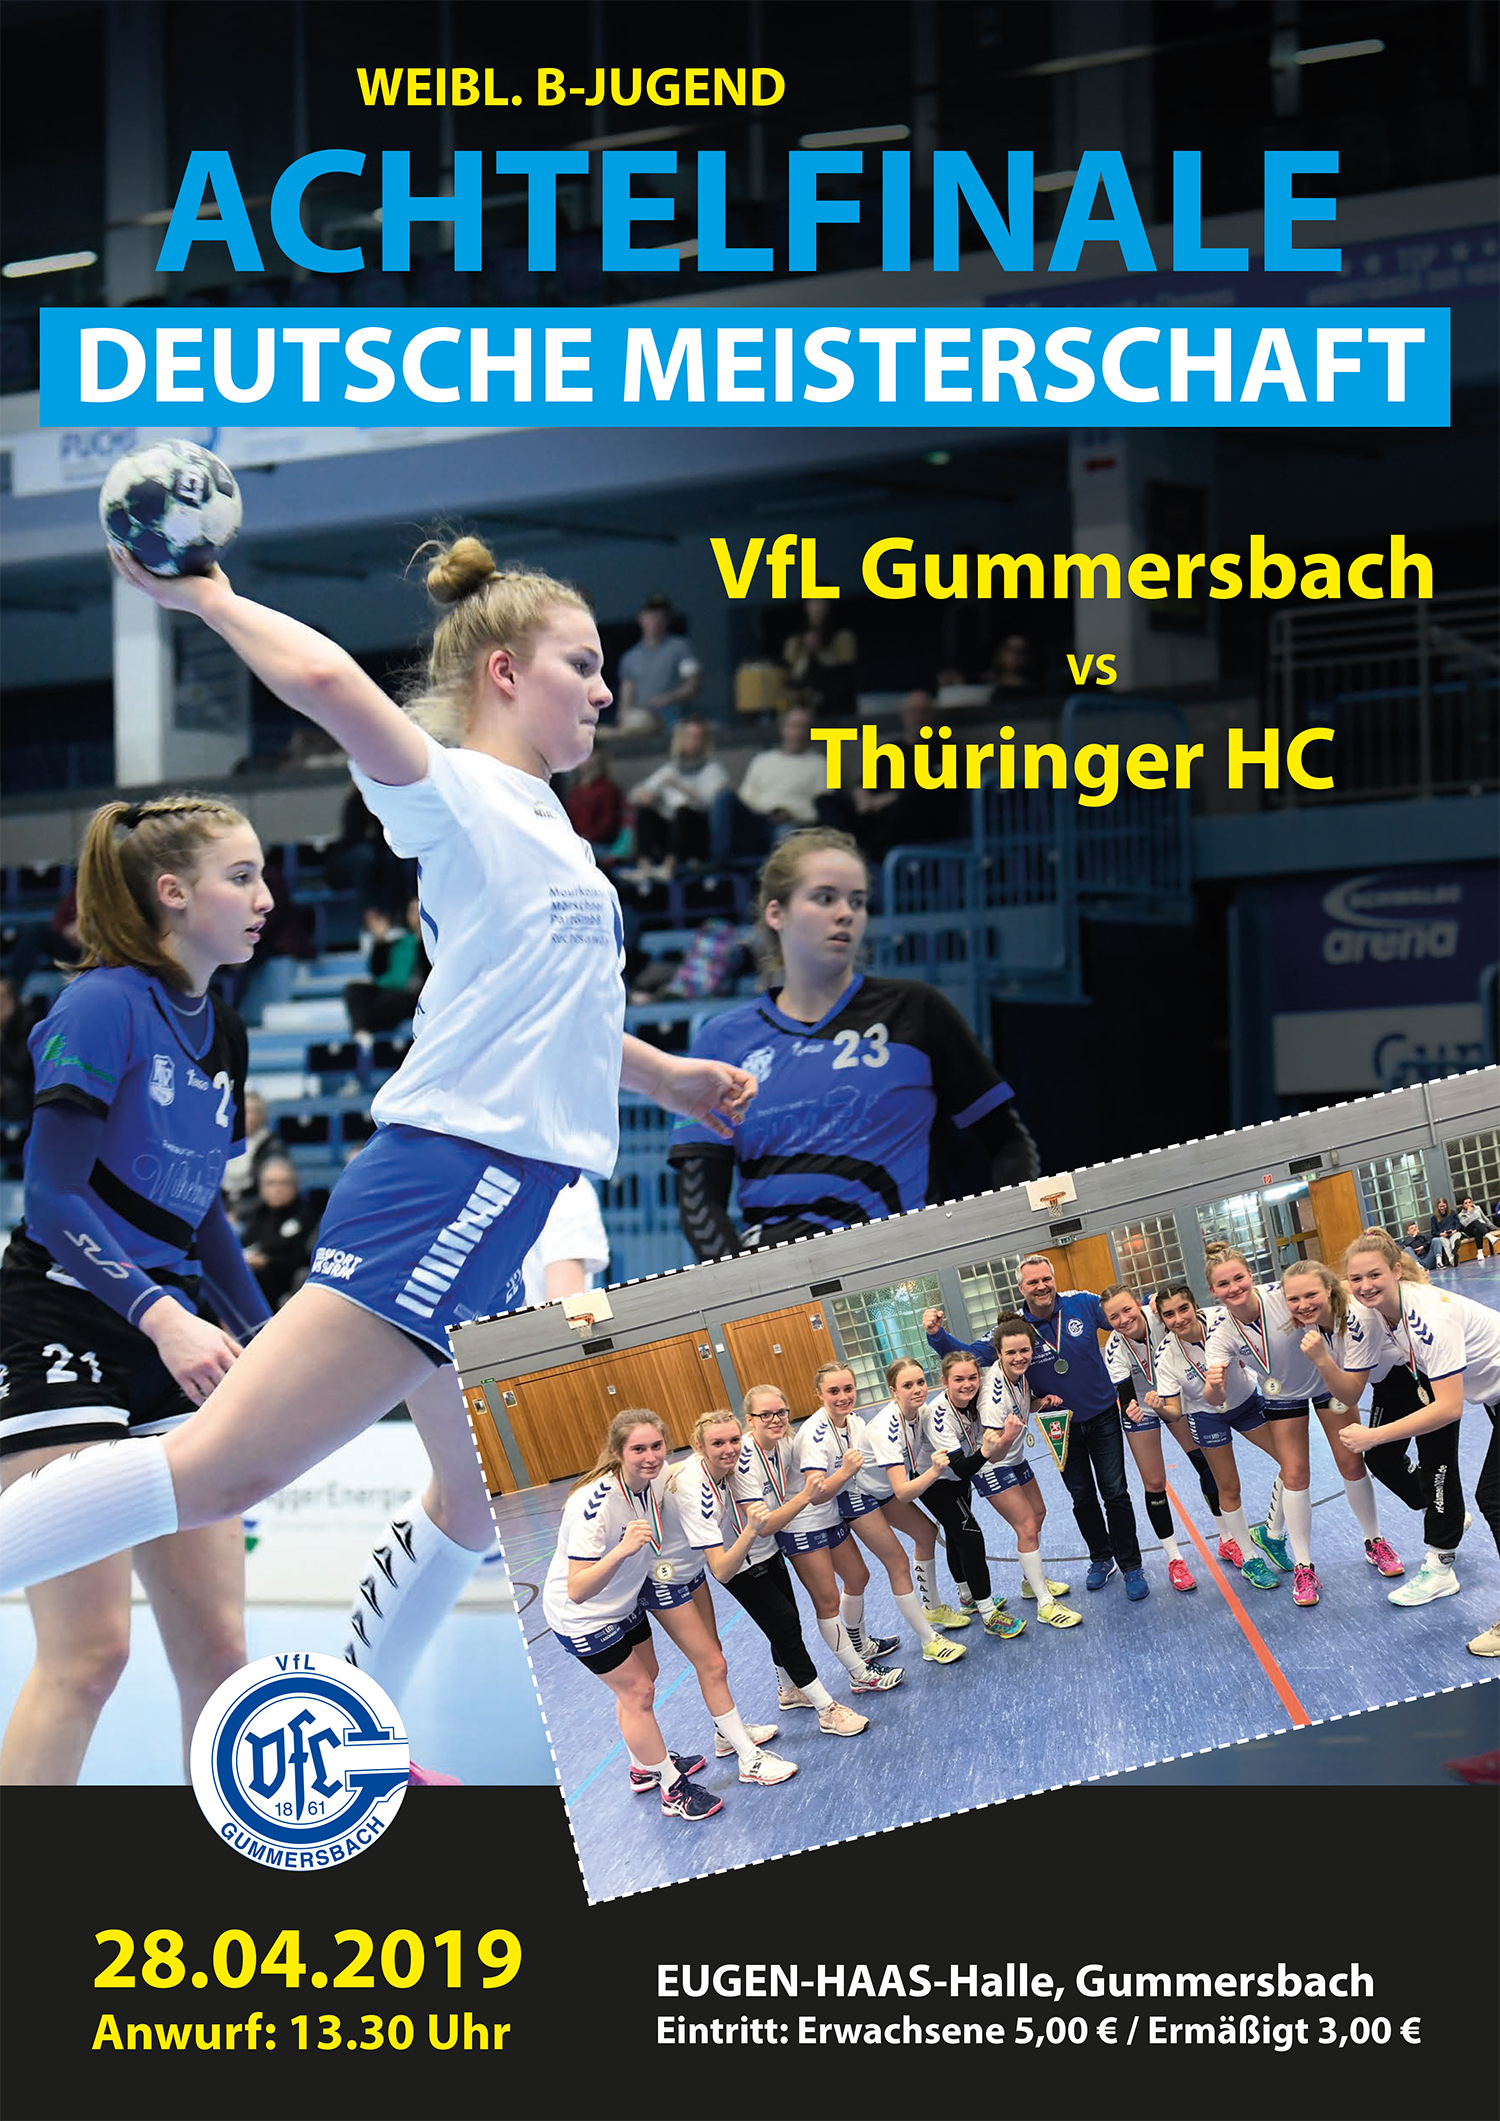 VfL Gummersbach e. V. |  Deutsche Meisterschaft Achtelfinale Weibl. B-Jugend 